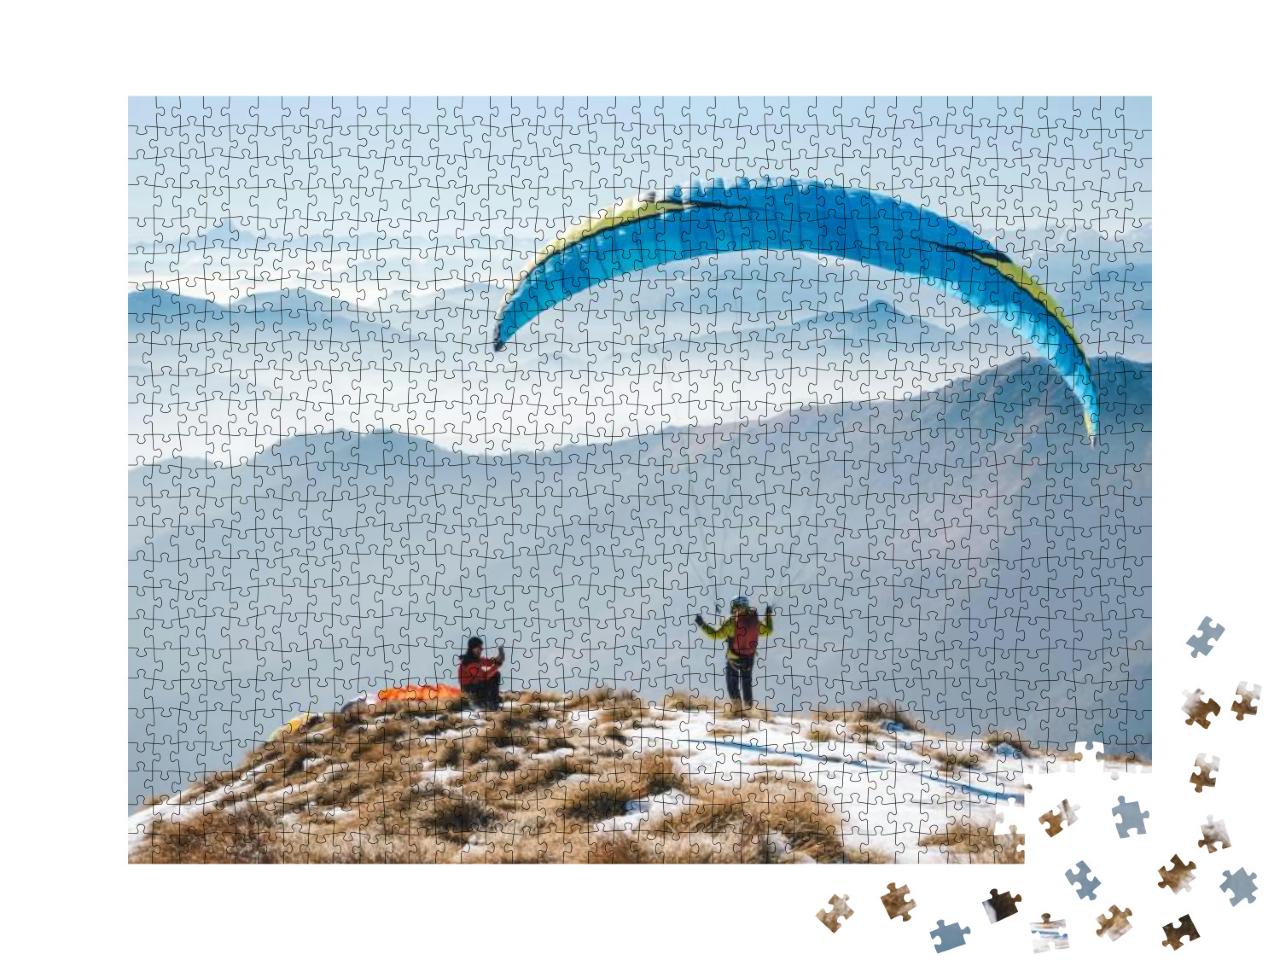 Puzzle 1000 Teile „Kurz vor dem Start: Gleitschirmfliegen in den Bergen“